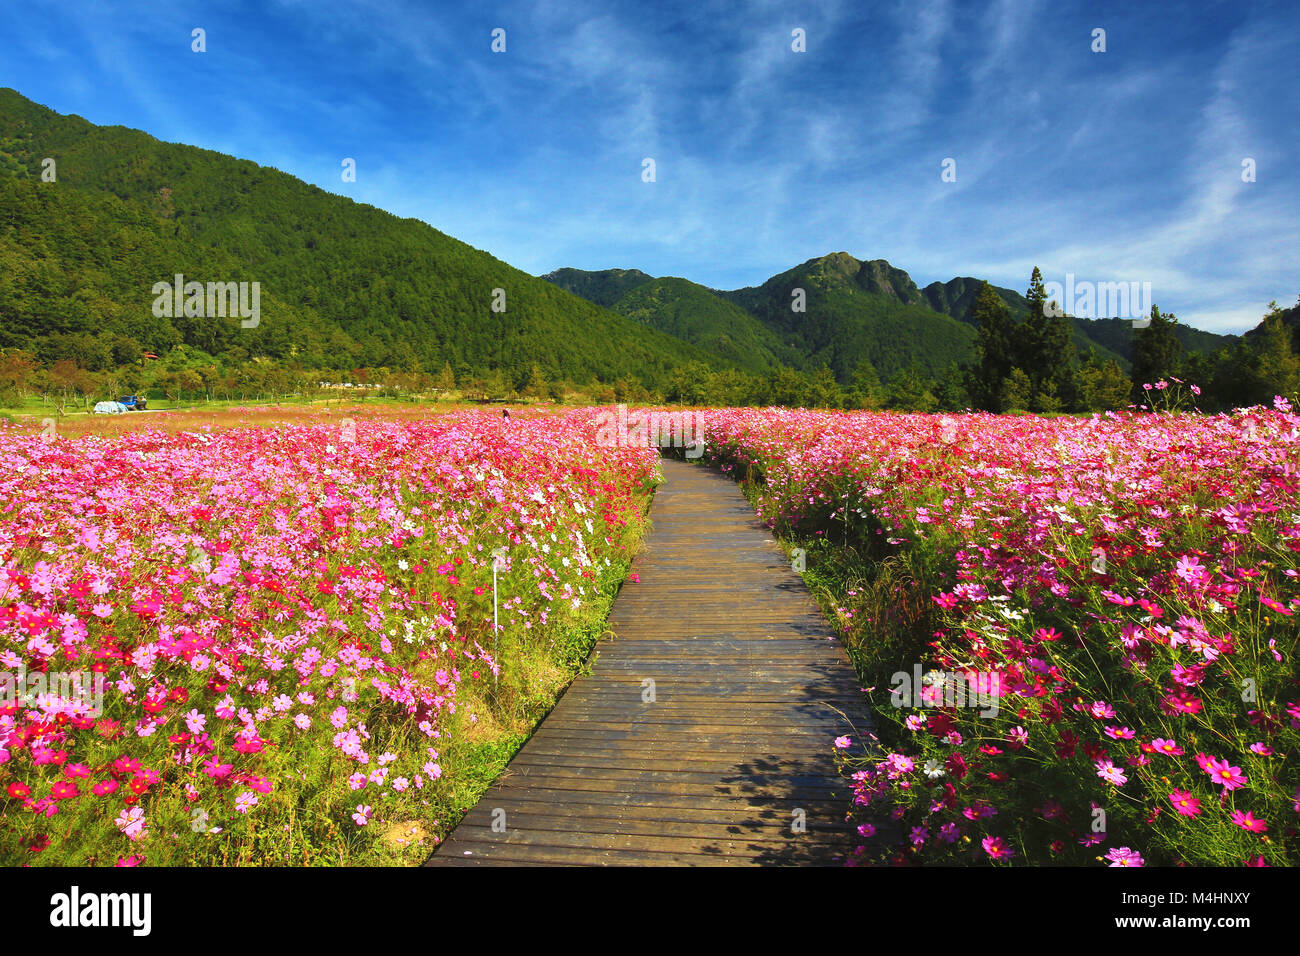 Die schöne Landschaft der Cosmos Blumen mit Weg, viele Rosa, weiße und rote Blumen blühen im Feld an einem sonnigen Tag Stockfoto